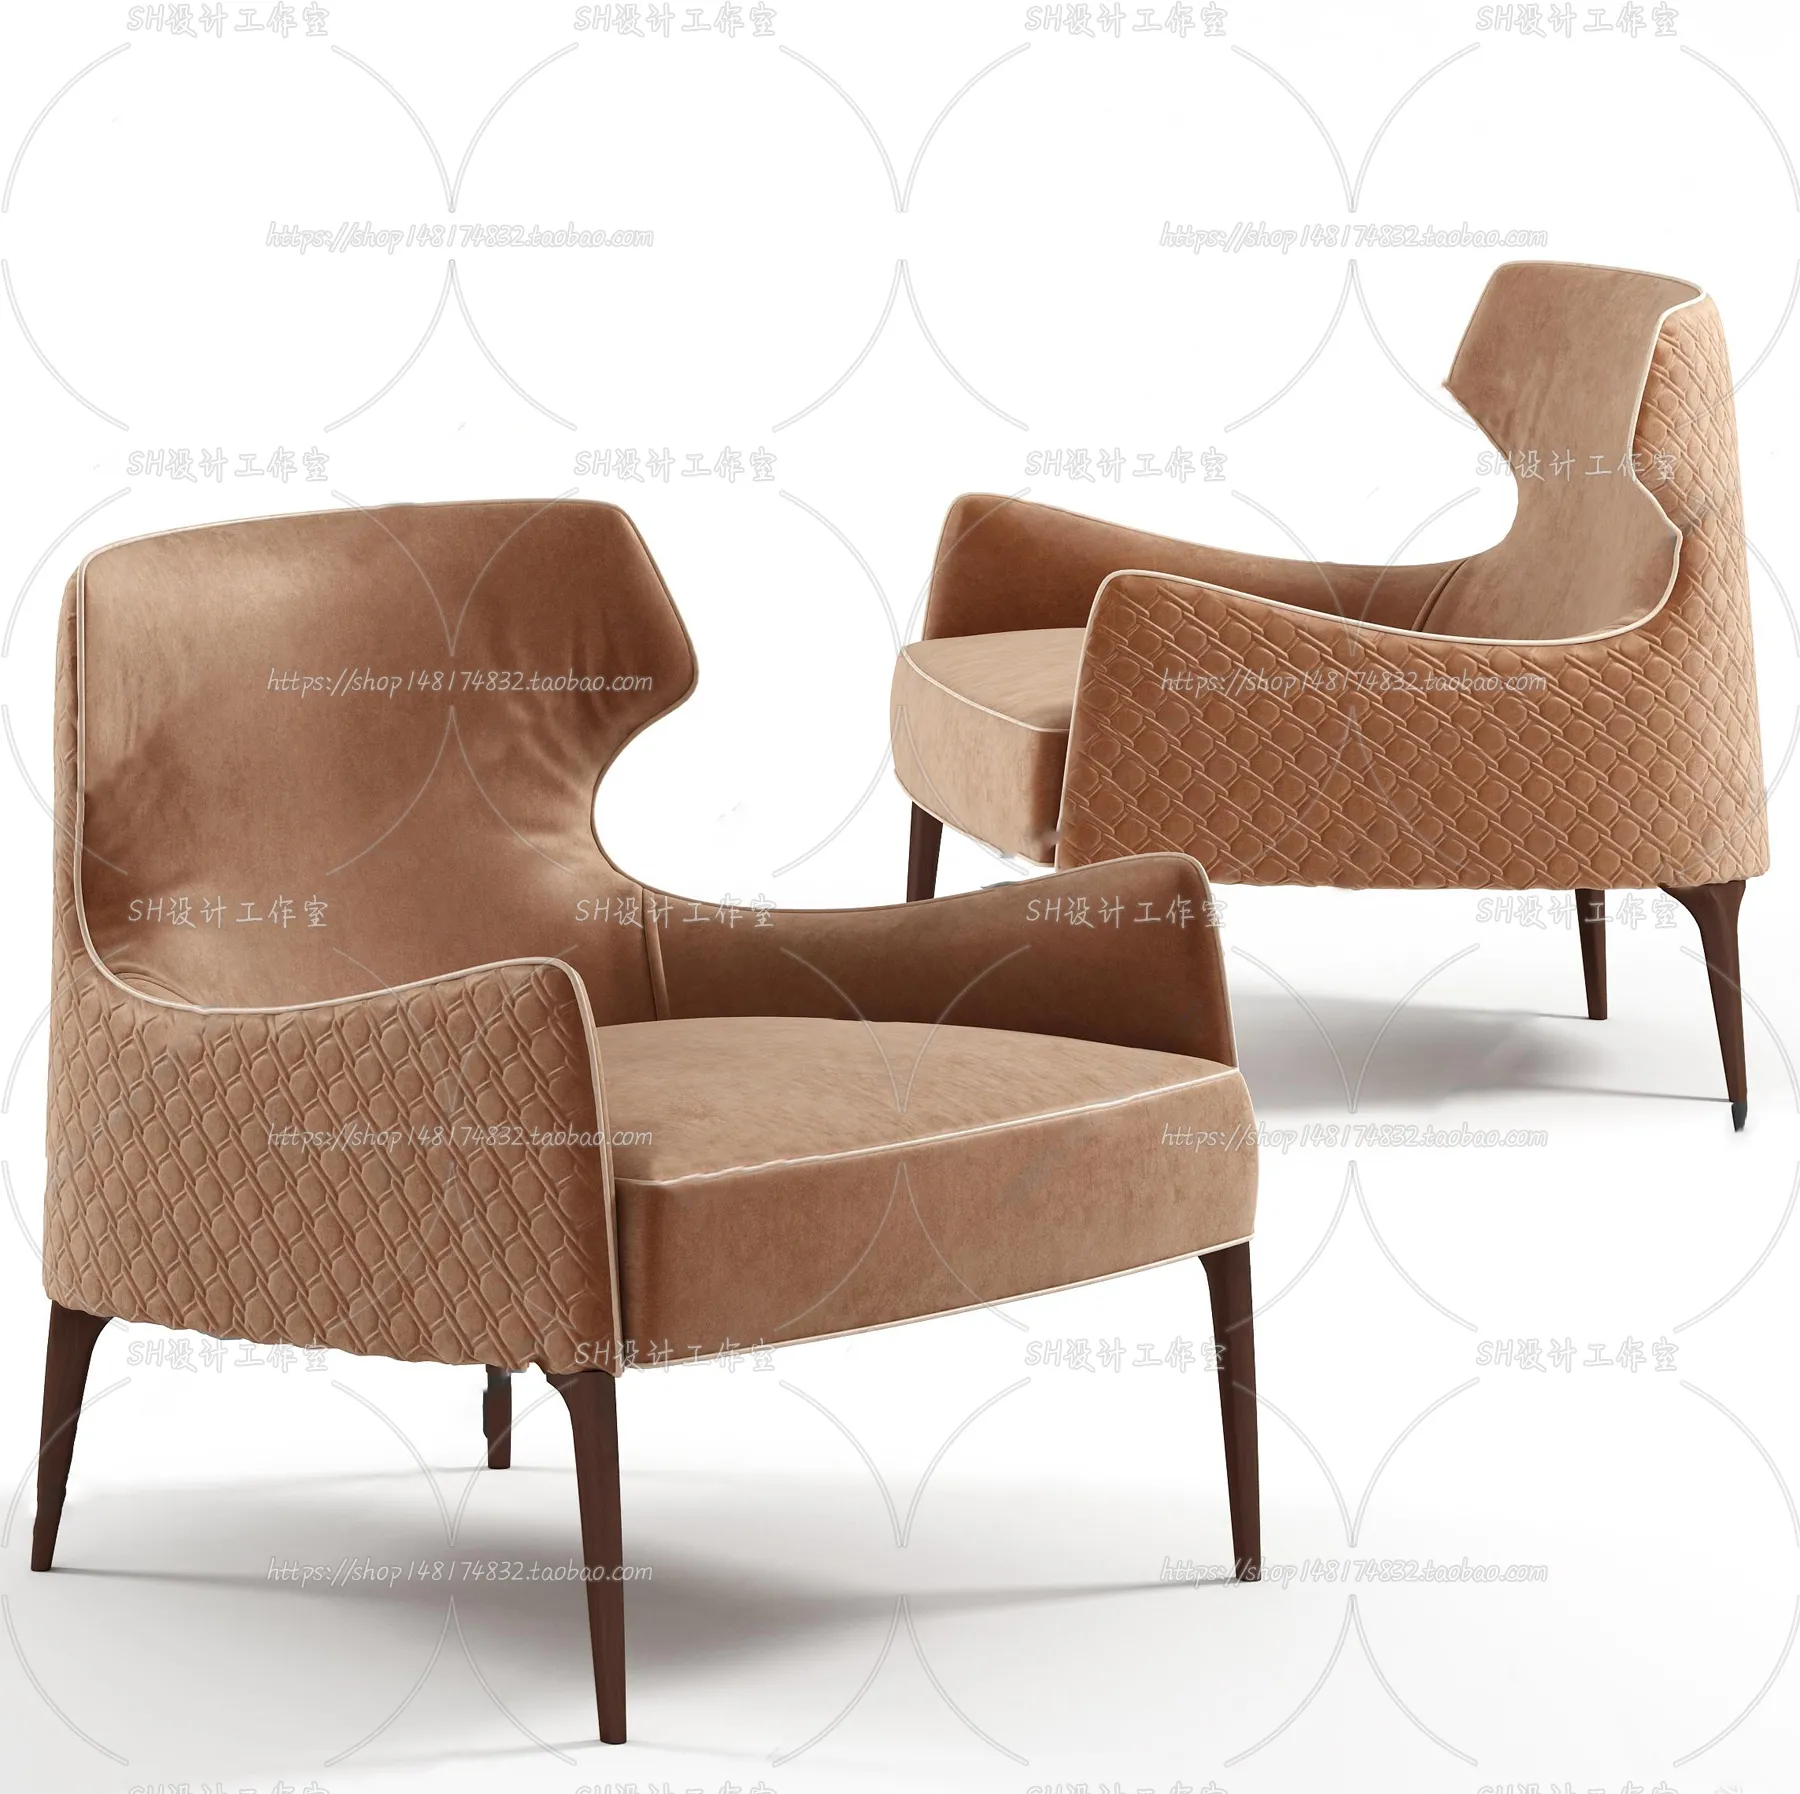 Chair – Single Chair 3D Models – 2036